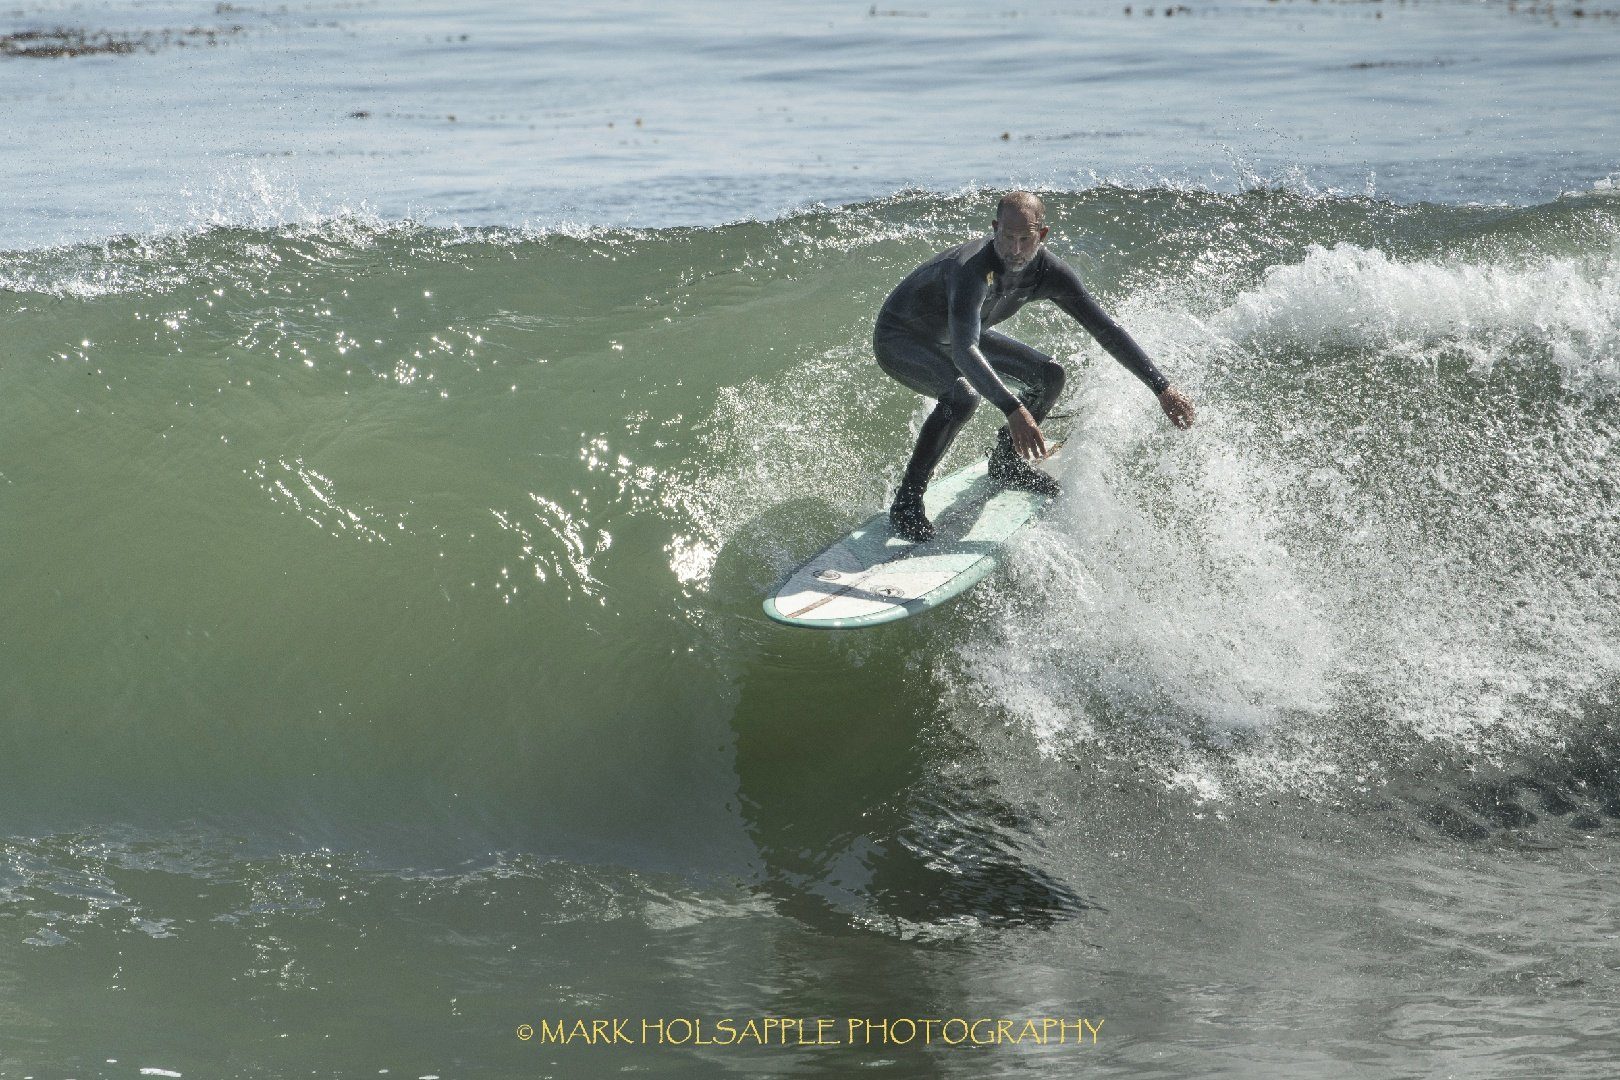 Locus Eco Surfboards - Hocus Pocus Asymmetrical Hull 8&